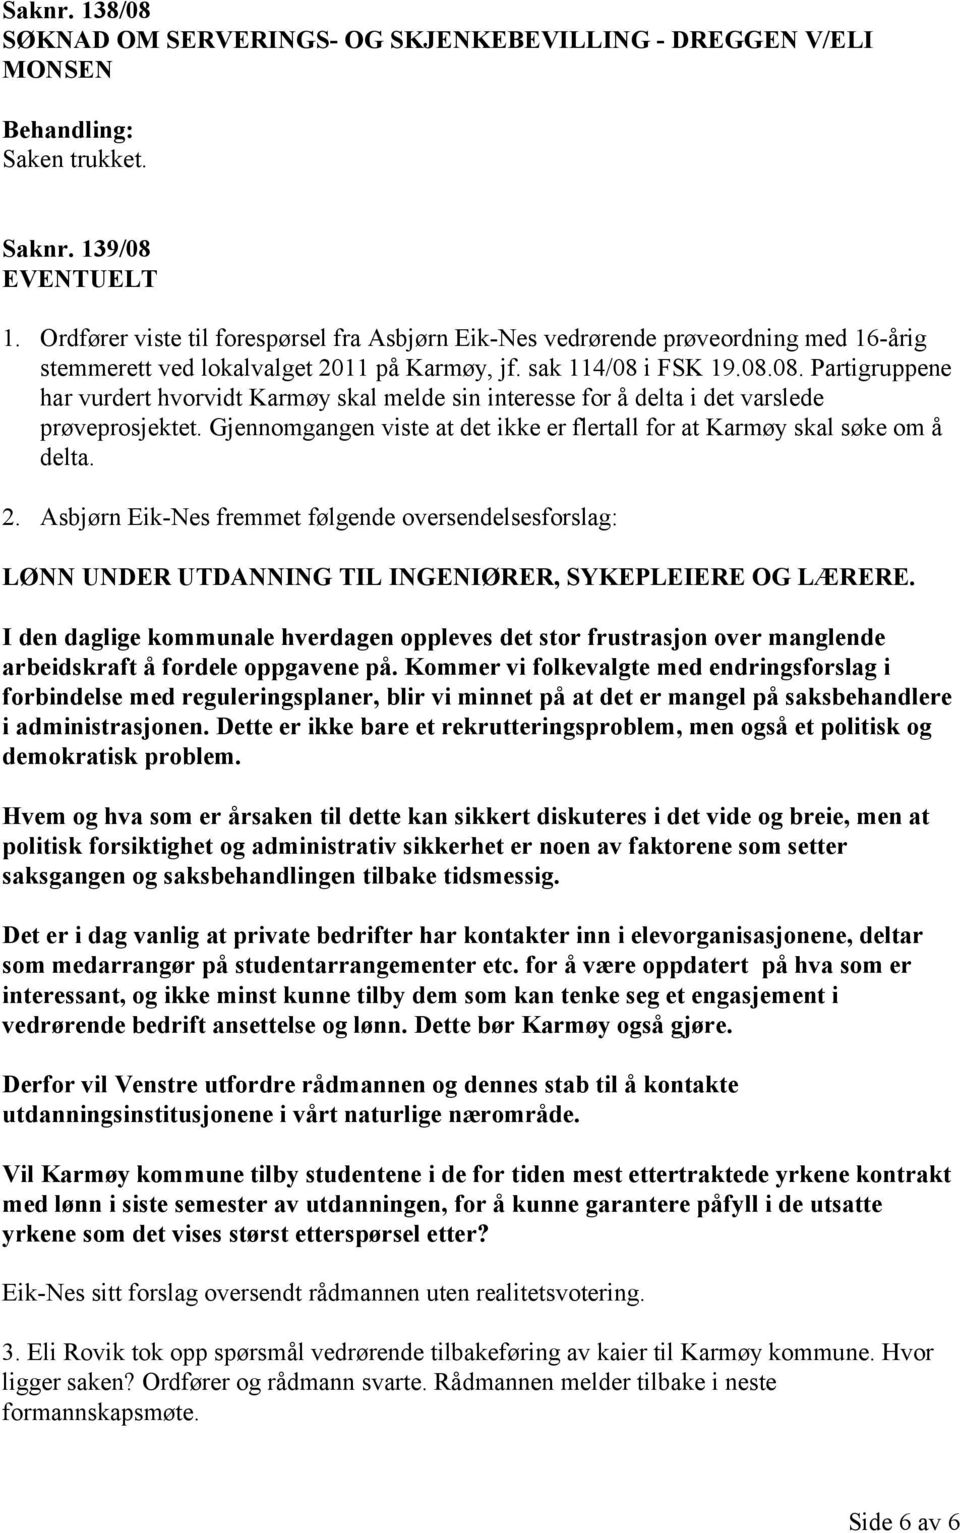 i FSK 19.08.08. Partigruppene har vurdert hvorvidt Karmøy skal melde sin interesse for å delta i det varslede prøveprosjektet.